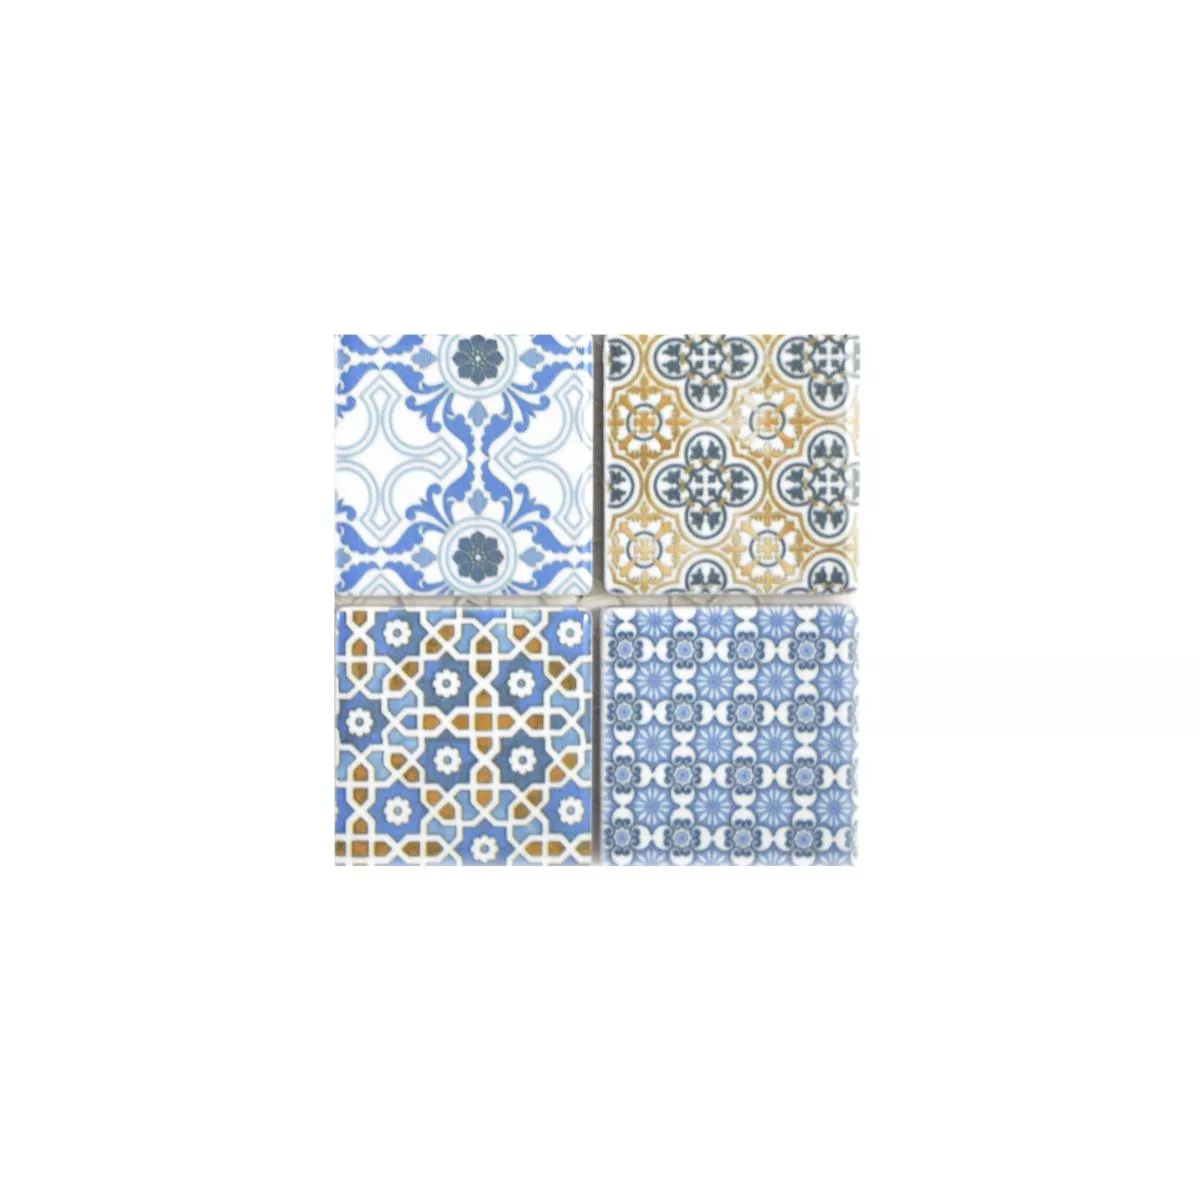 Muestra Cerámica Azulejos De Mosaico Daymion Aspecto Retro  Azul Marrón